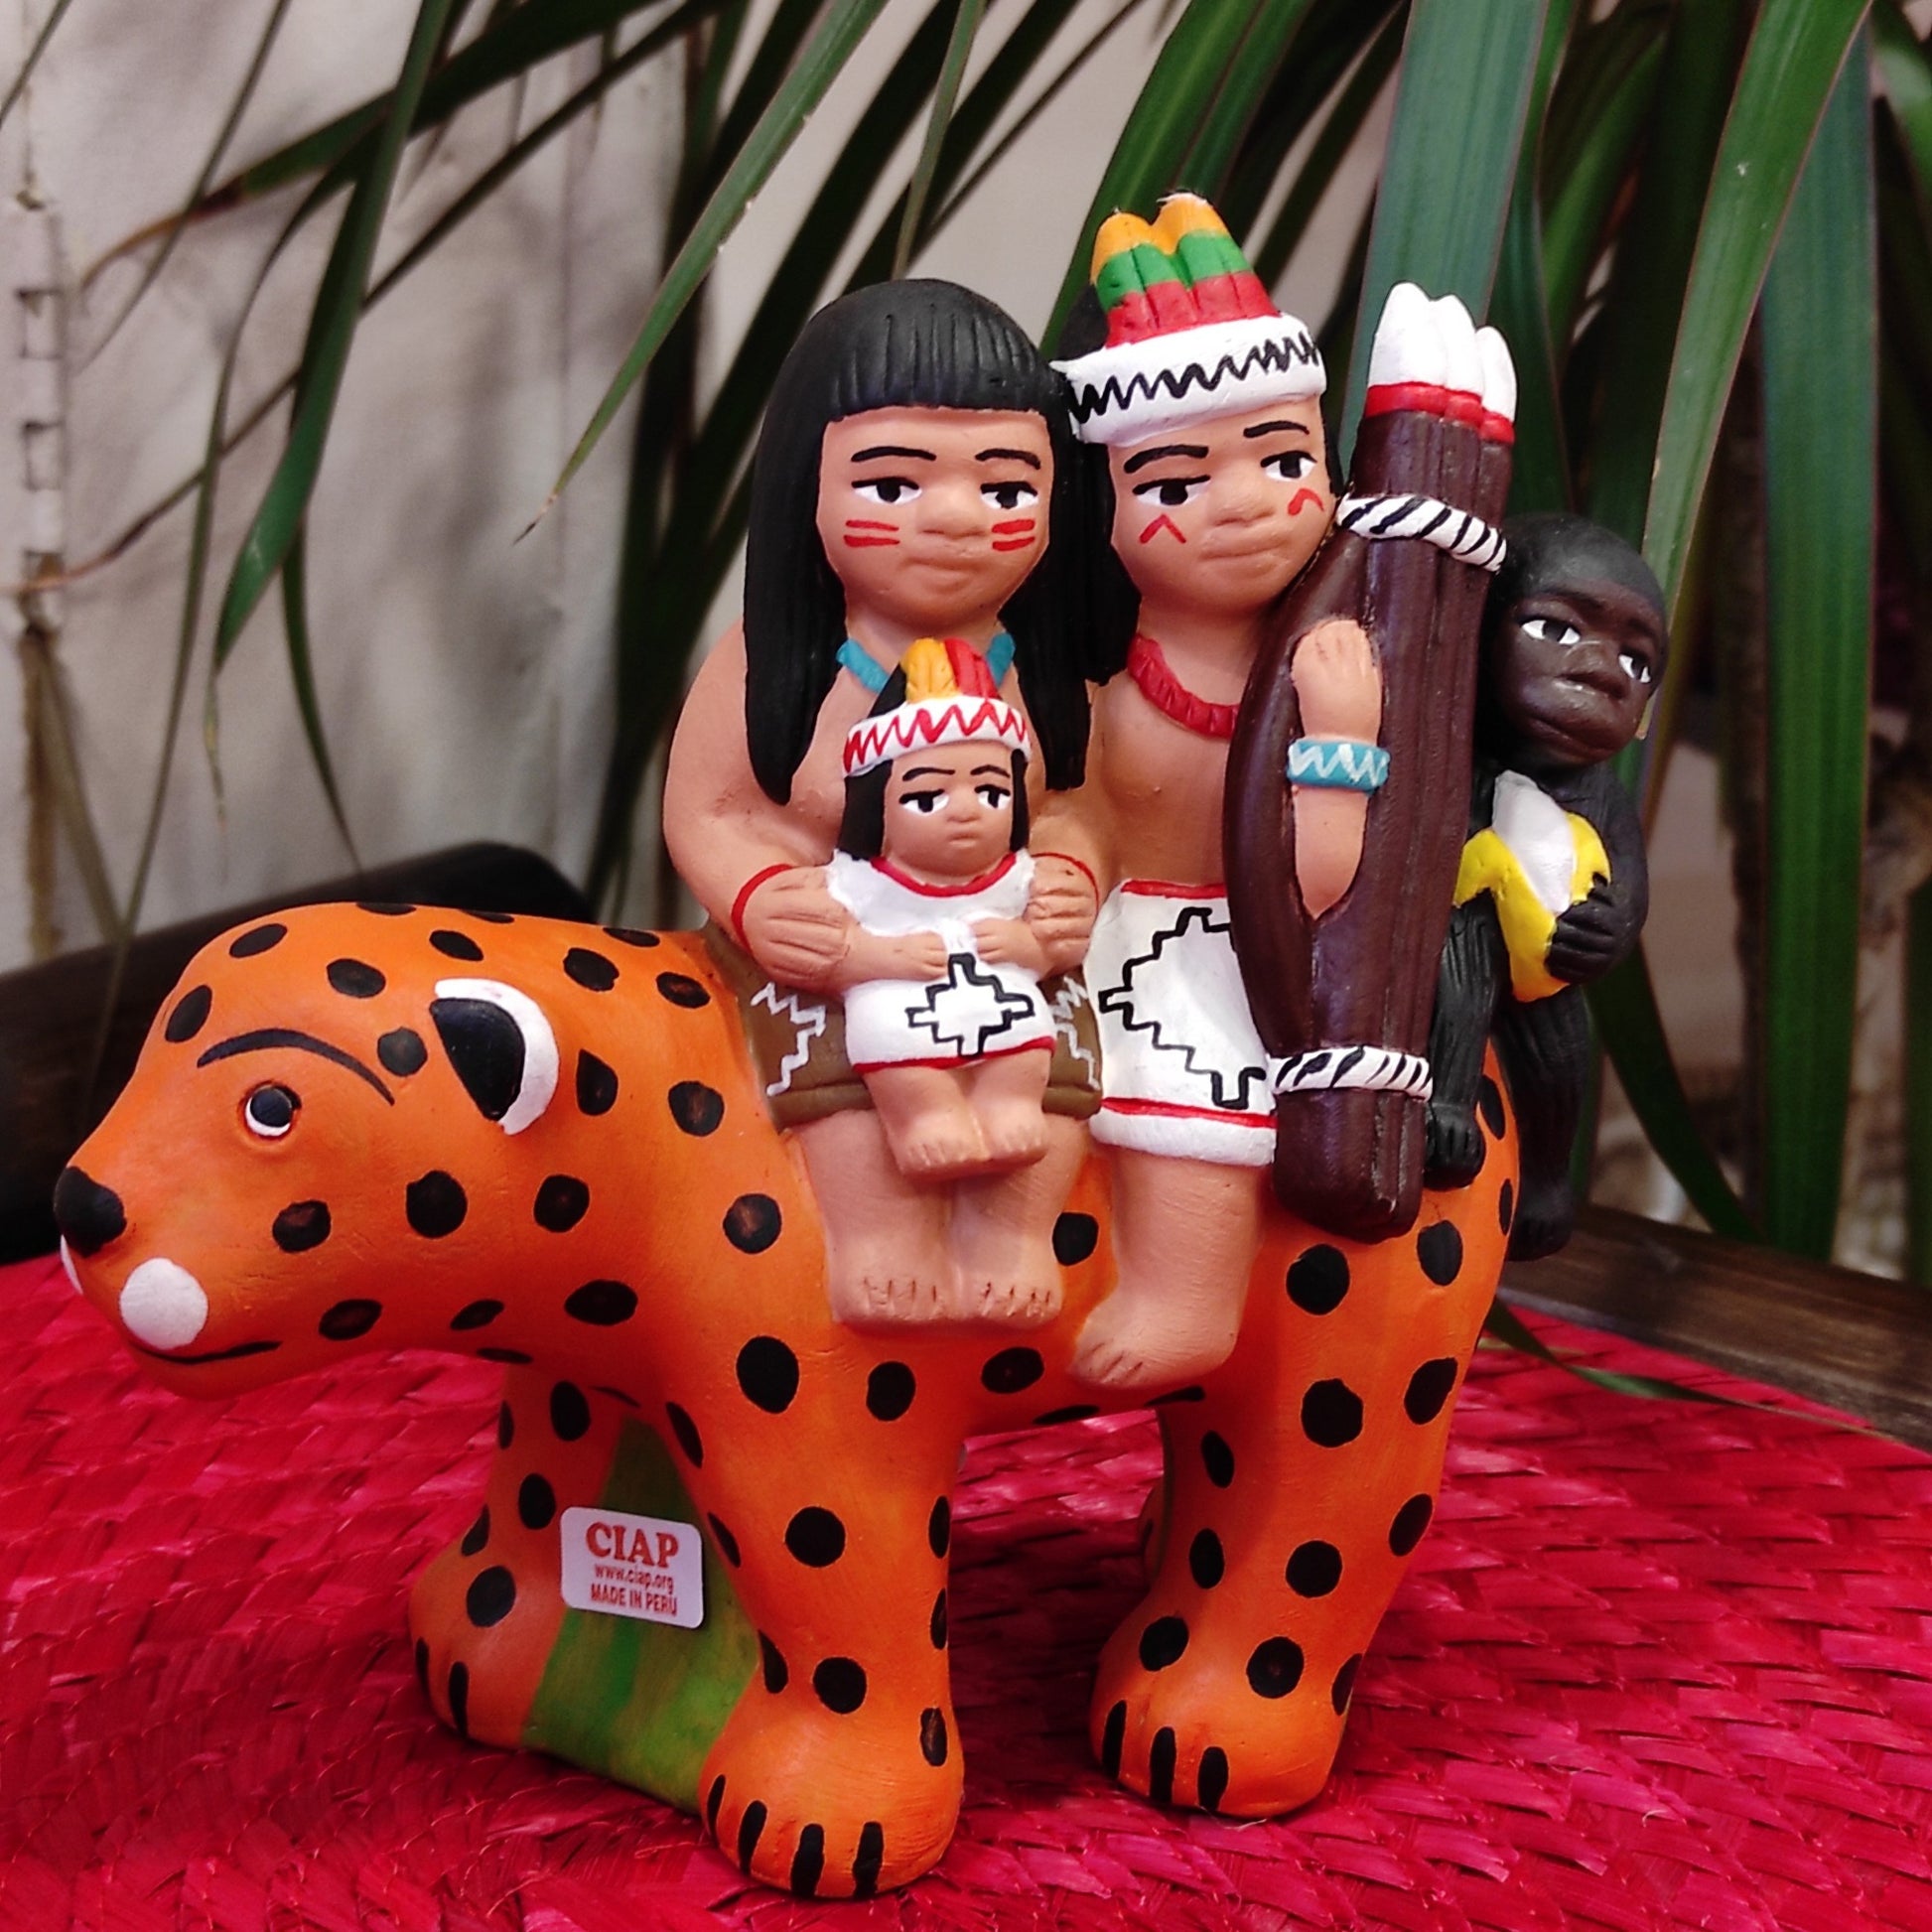 Presepe peruviano in terracotta con dolci personaggi sopra a un grande giaguaro. Fatto a mano da artigiani in Perù